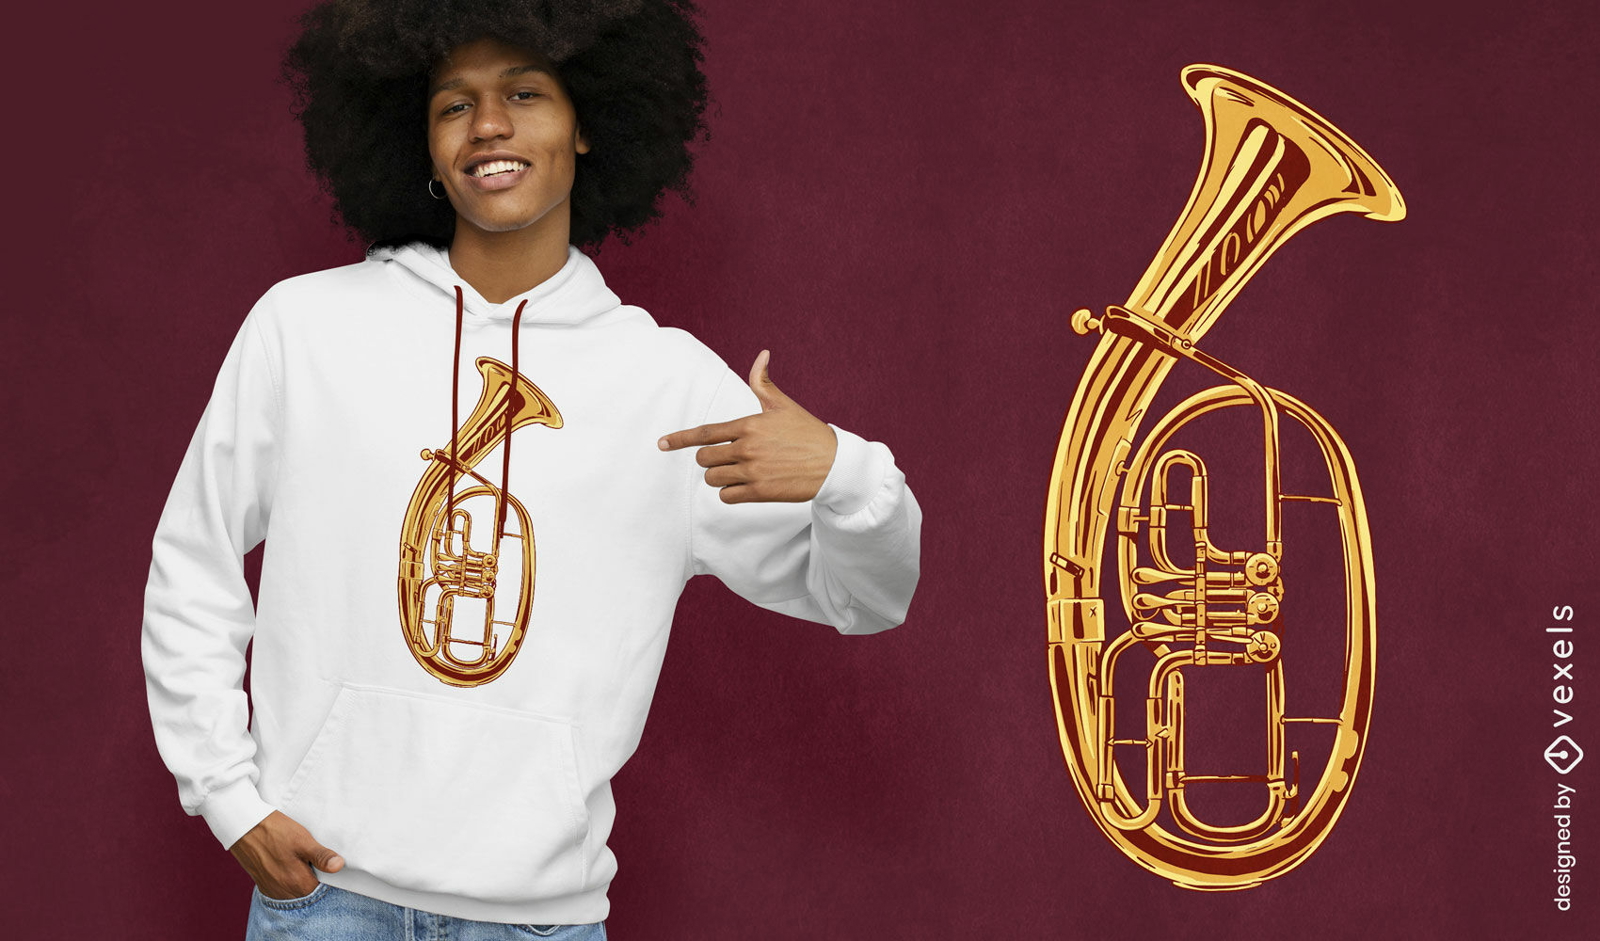 Dise?o de camiseta de instrumento musical tenorhorn.